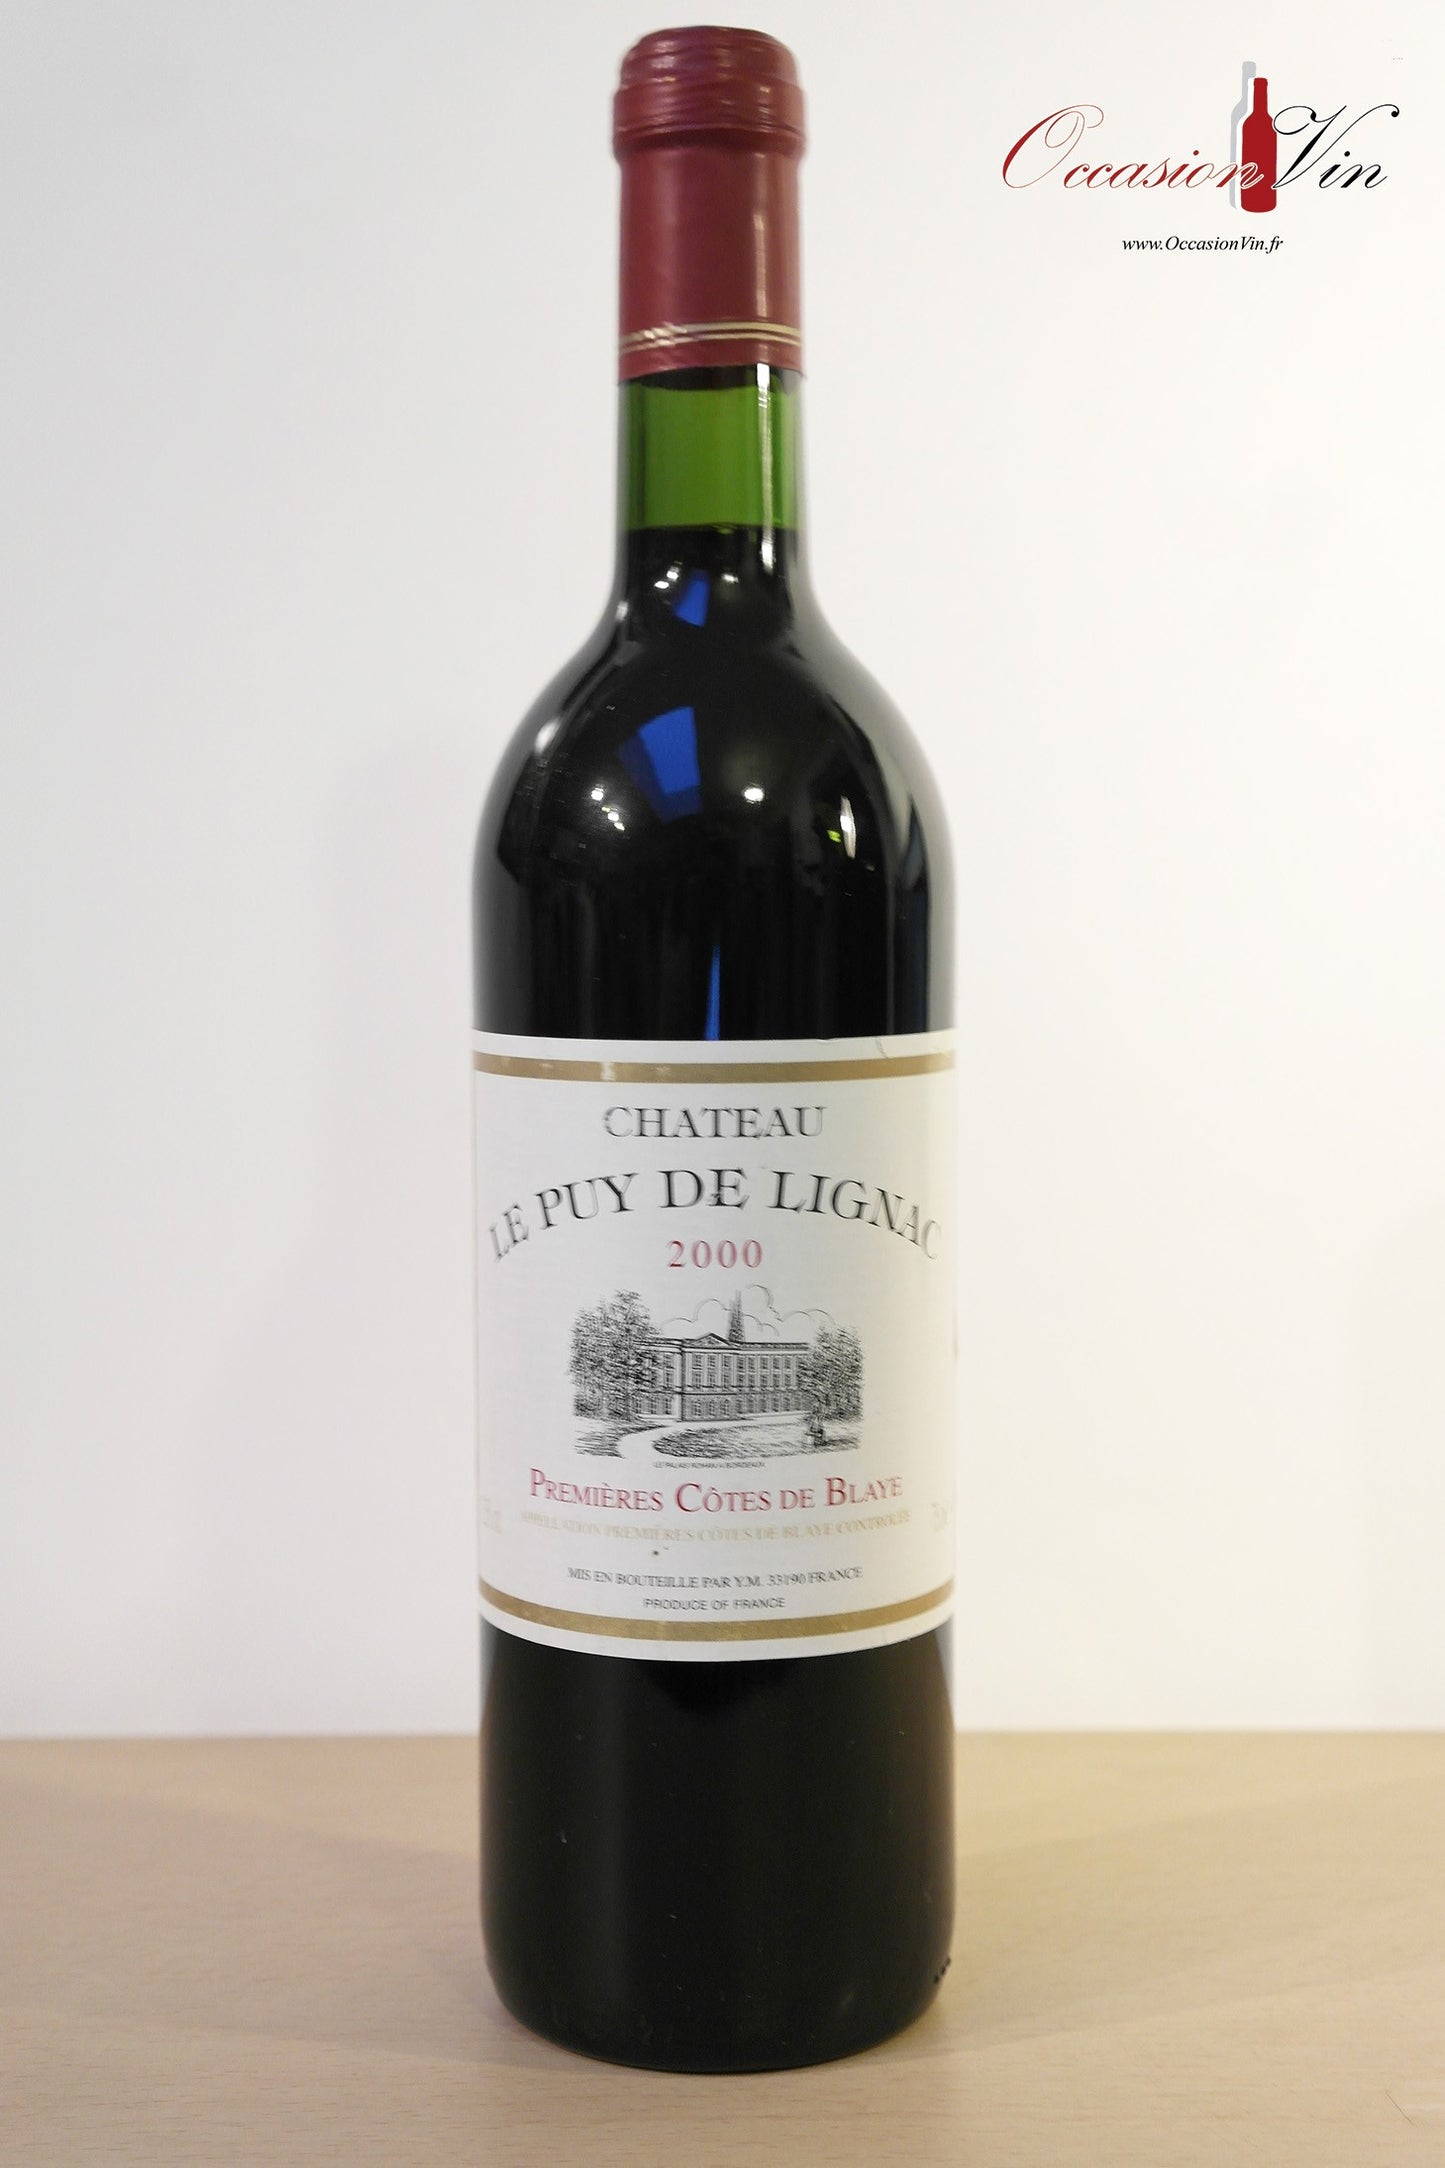 Château Le Puy de Lignac Vin 2000